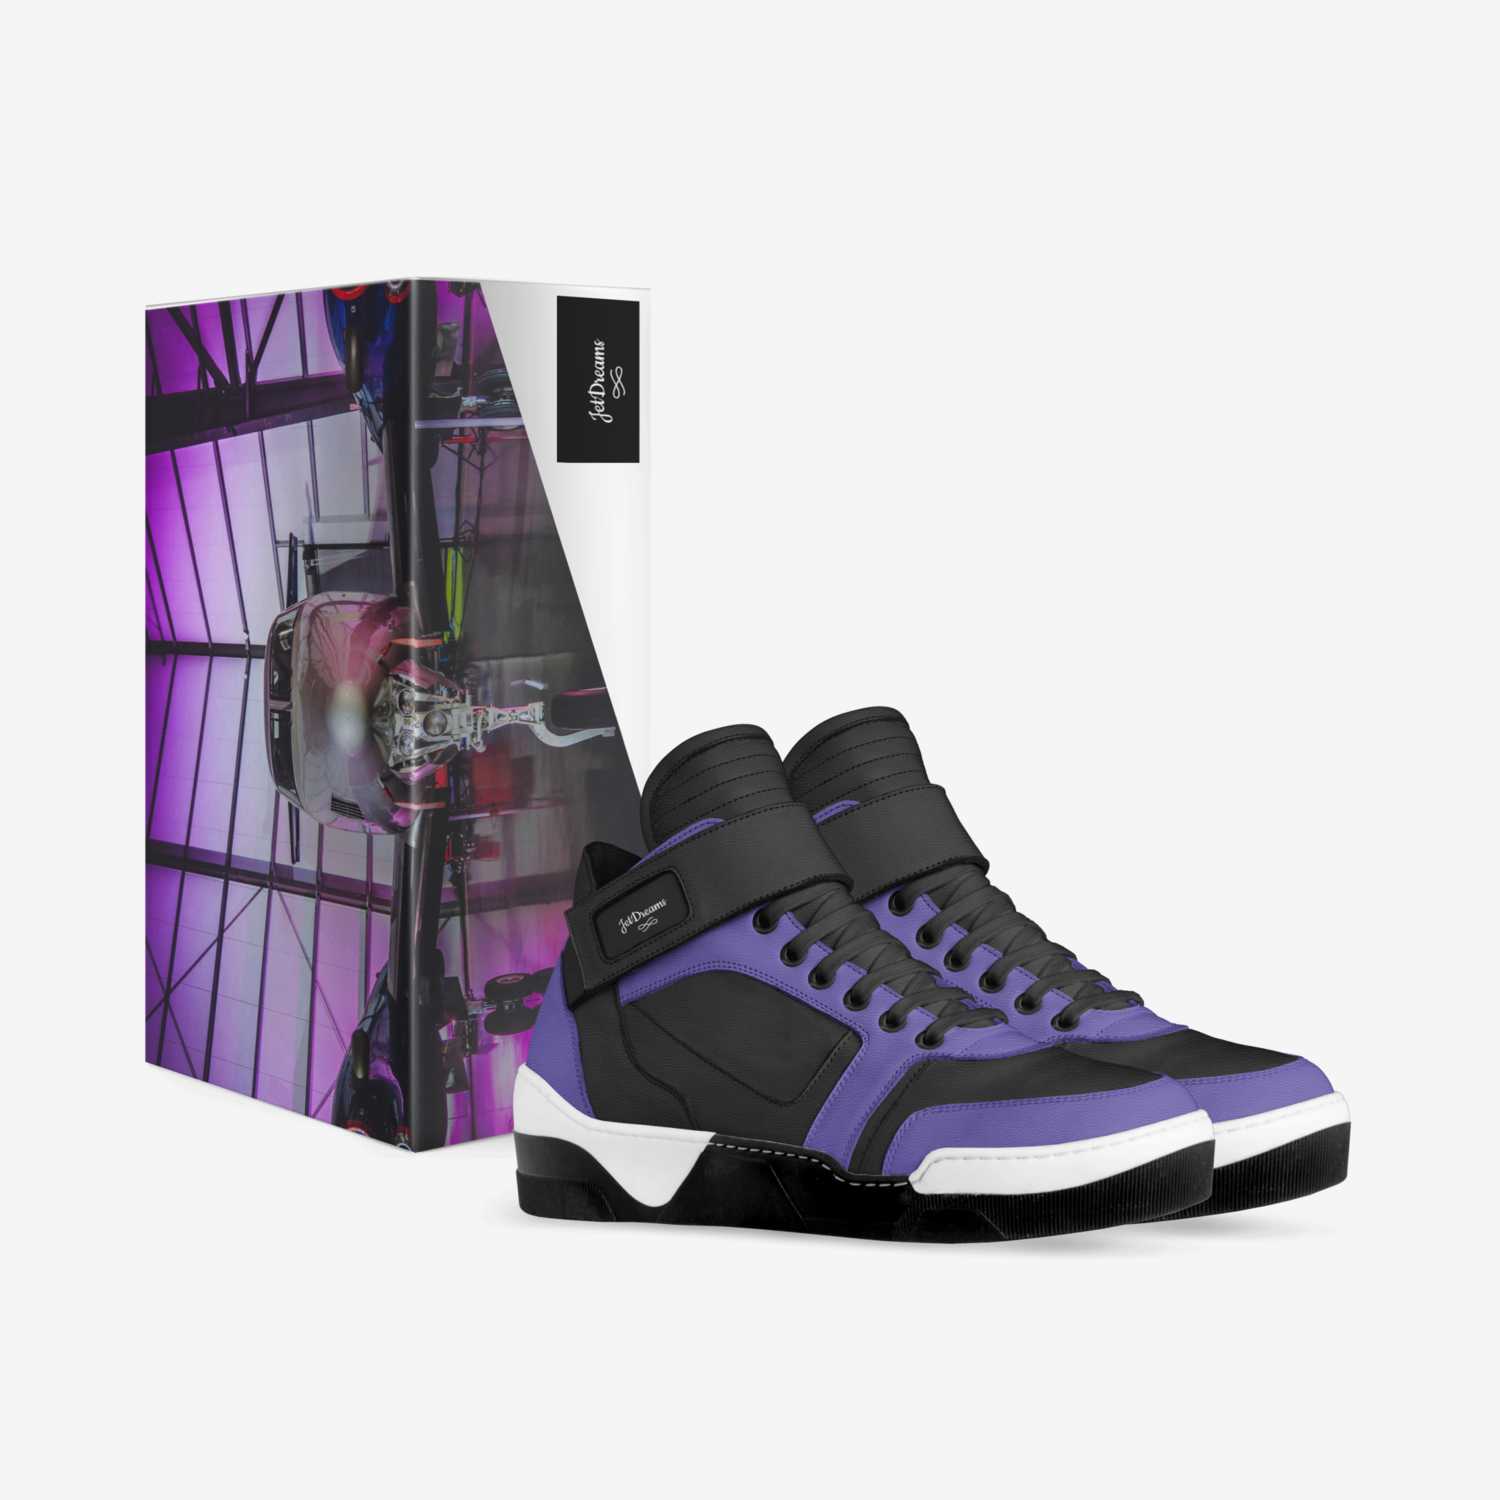 JetDreams custom made in Italy shoes by Laronda Gavin | Box view